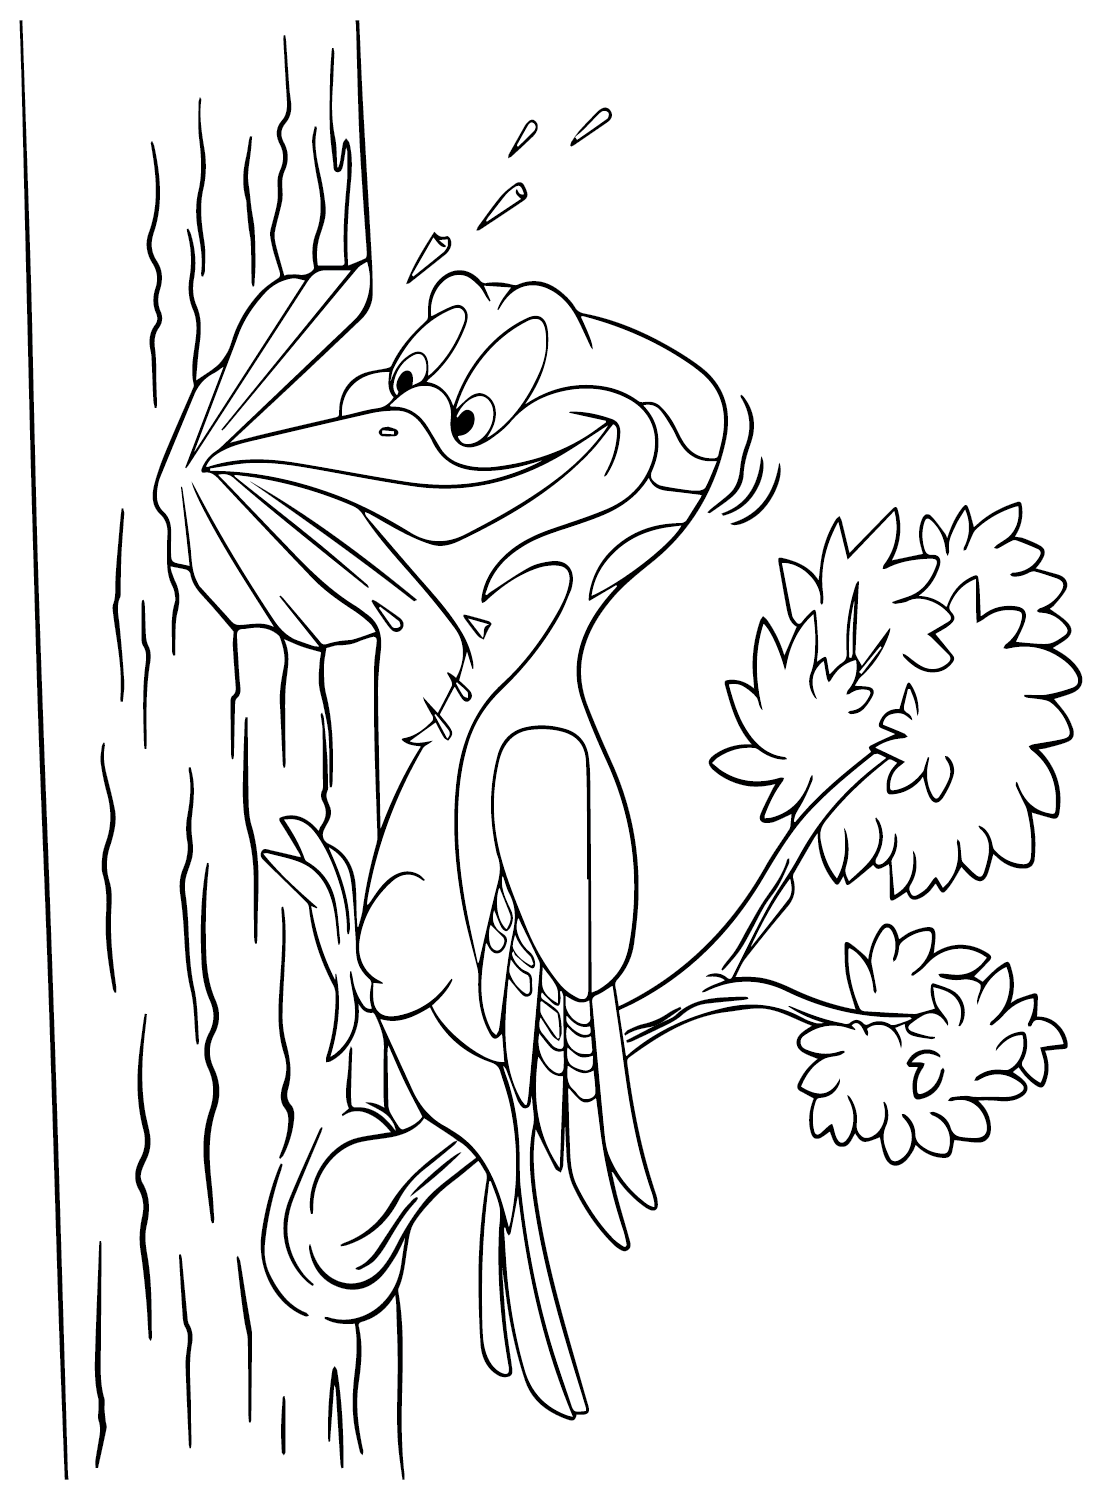 Dibujo para colorear de Woody Woodpecker gratis de Woodpecker